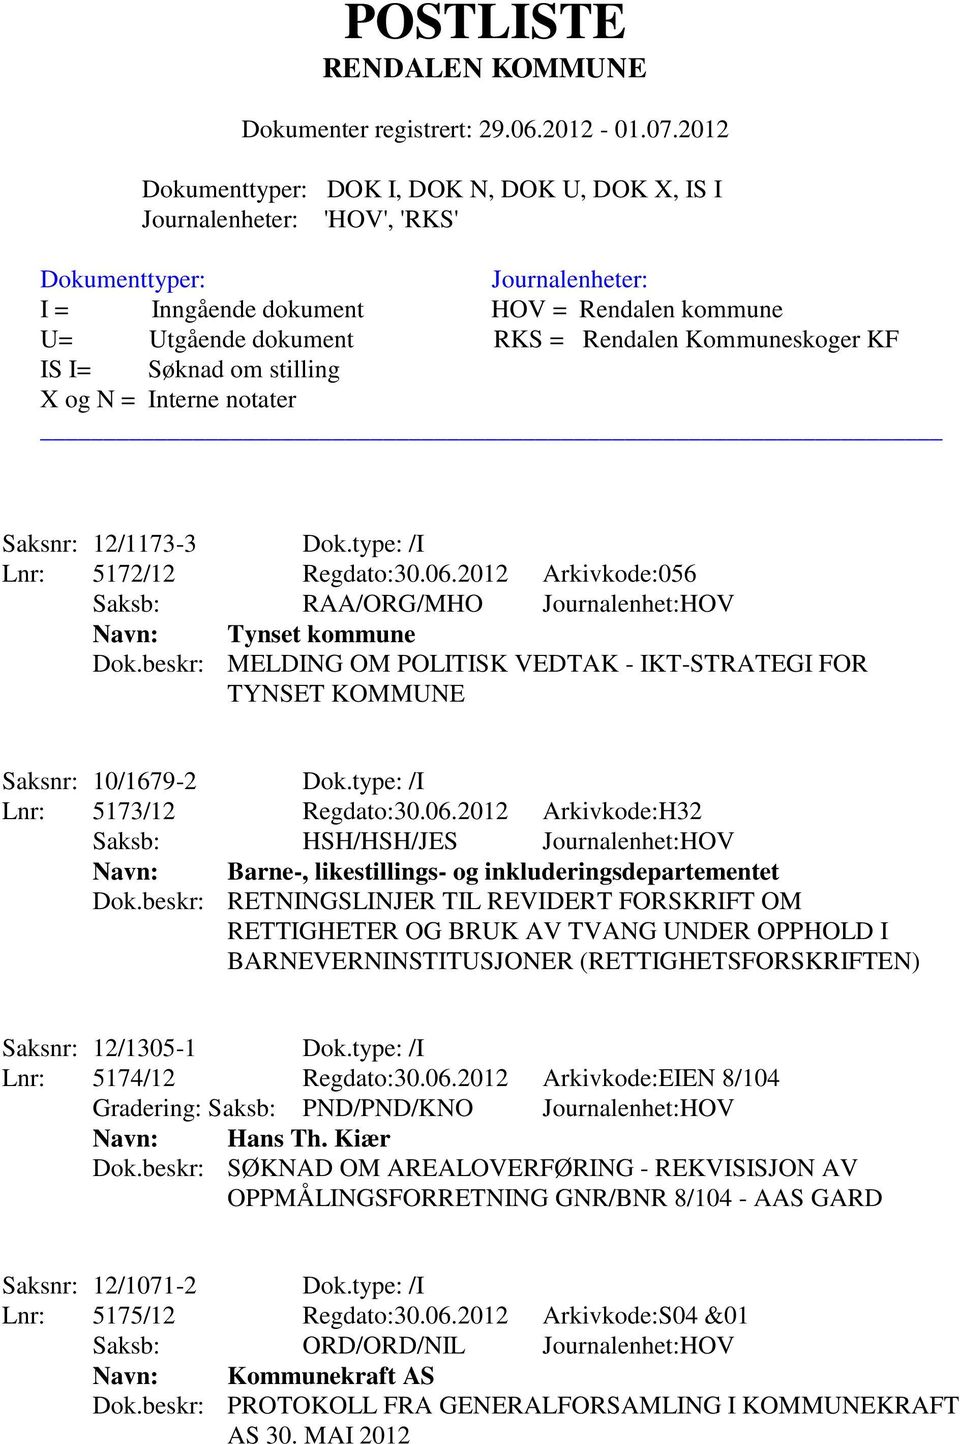 2012 Arkivkode:H32 Saksb: HSH/HSH/JES Journalenhet:HOV Navn: Barne-, likestillings- og inkluderingsdepartementet Dok.